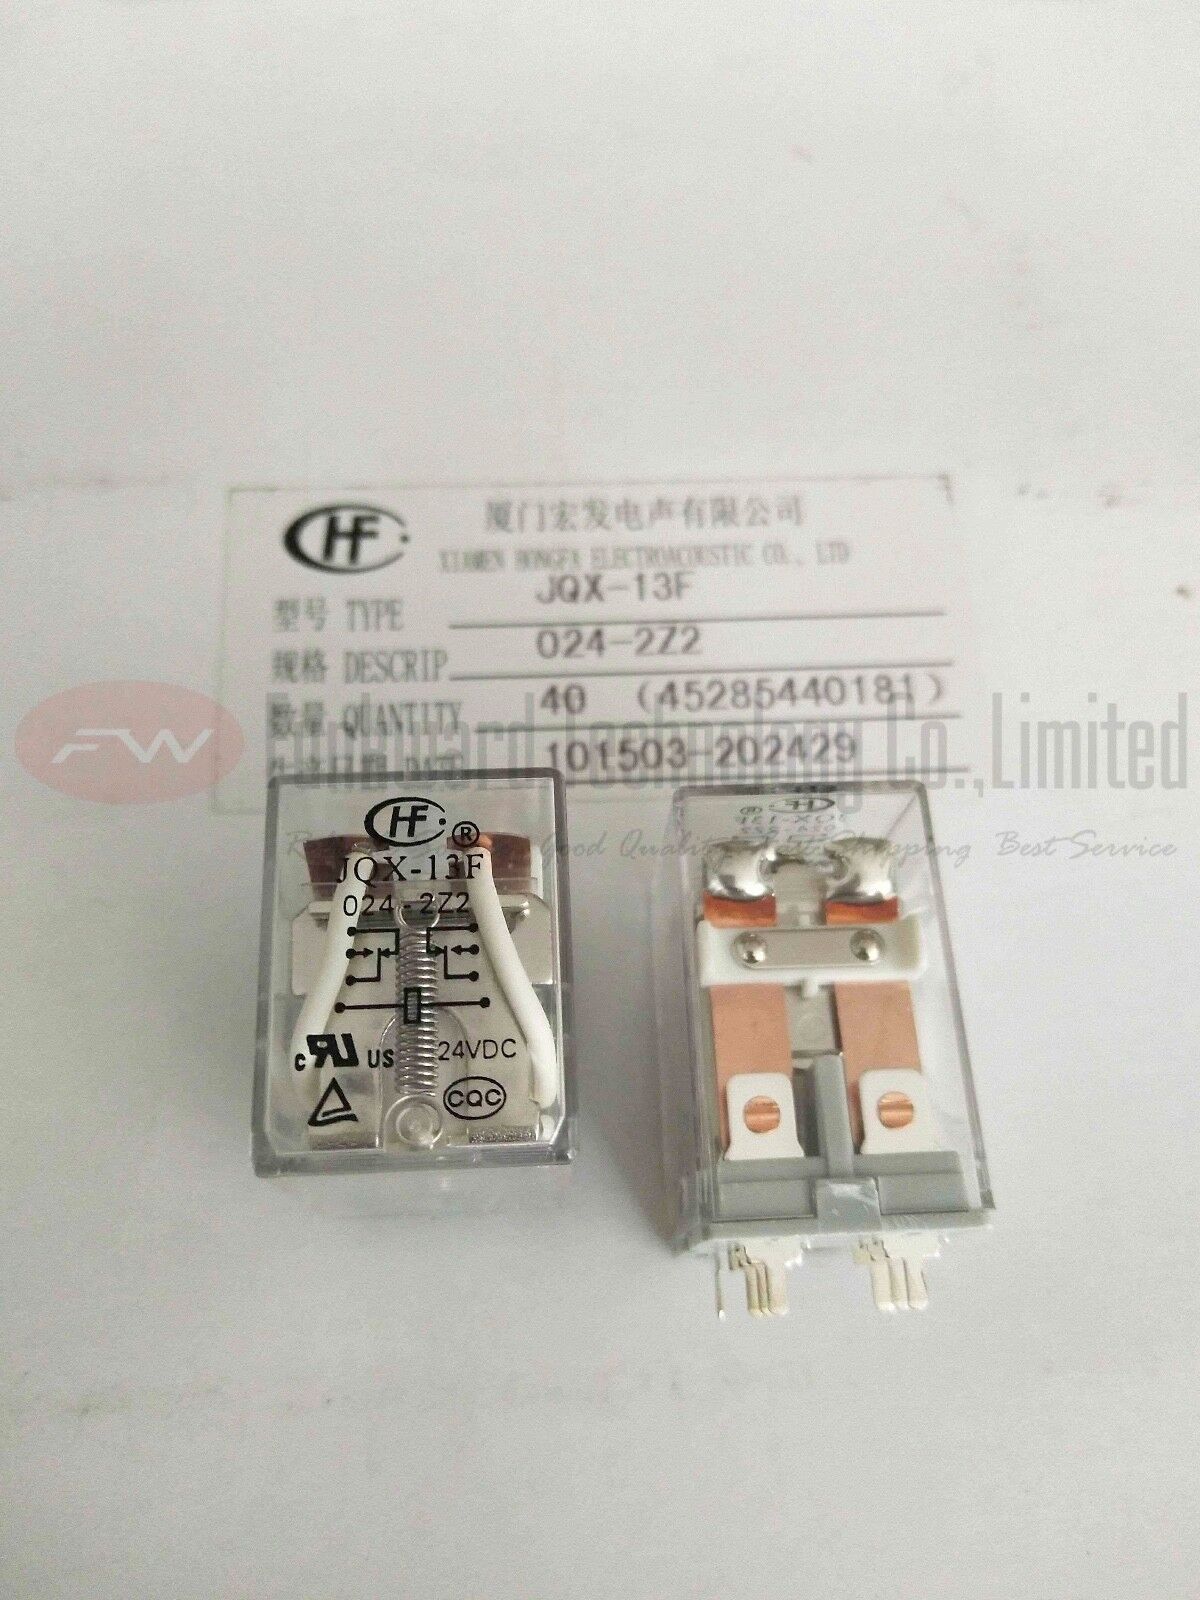 JQX-13F/024-2Z2 HF13F/024-2Z2 Intermediate Relay 10A 24VDC 8 Pins x 2pcs